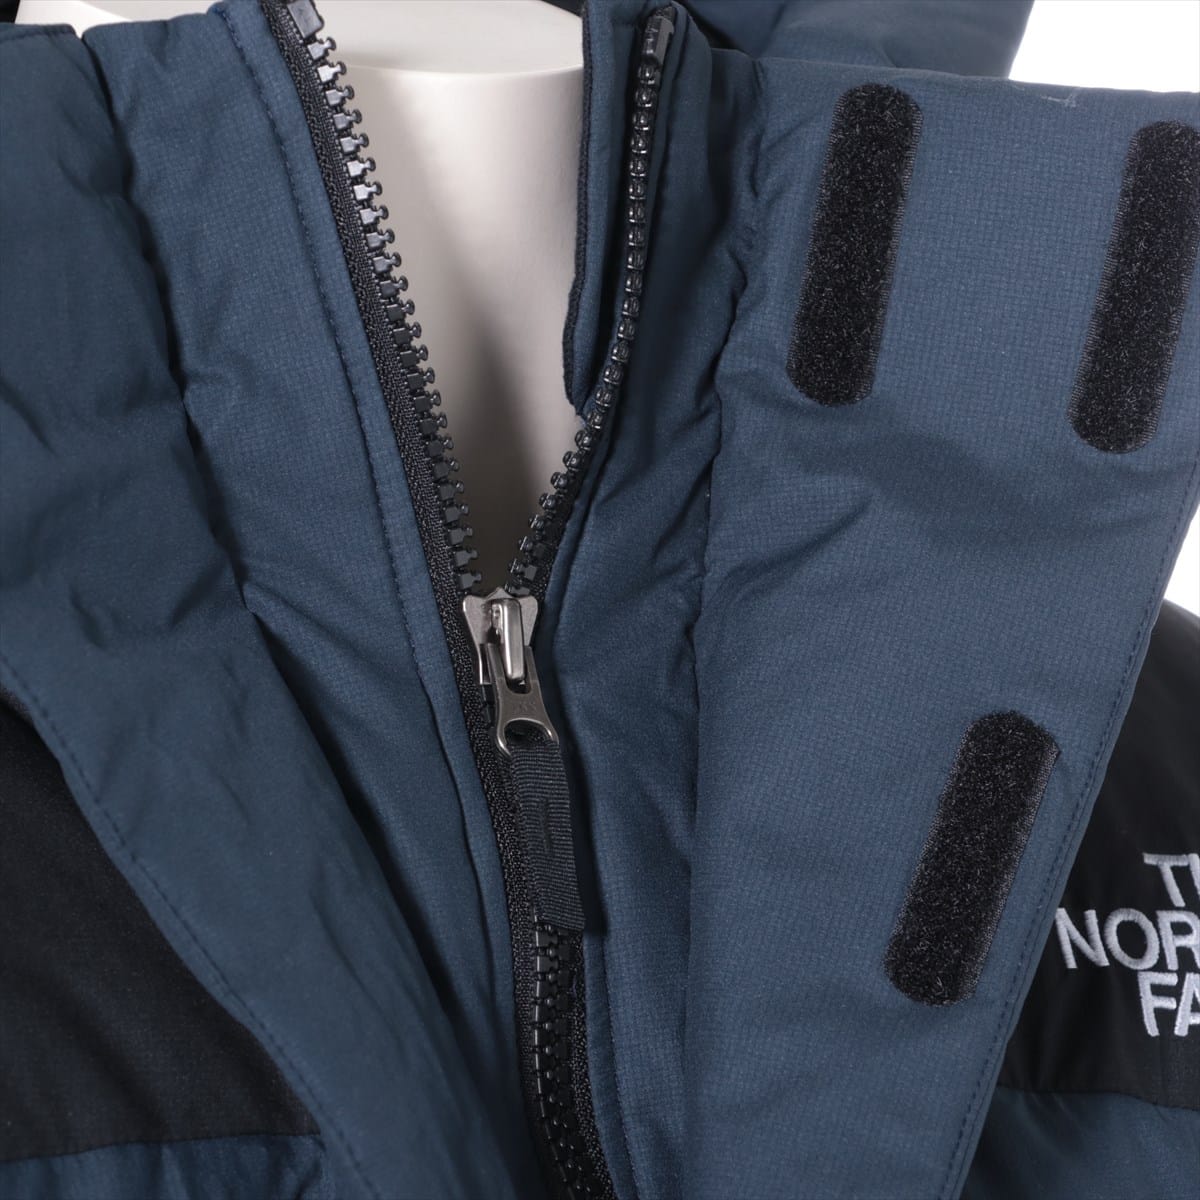 ノースフェイス ナイロン ダウンジャケット XL メンズ ネイビー  ND91950 Baltro Light 保存袋付き